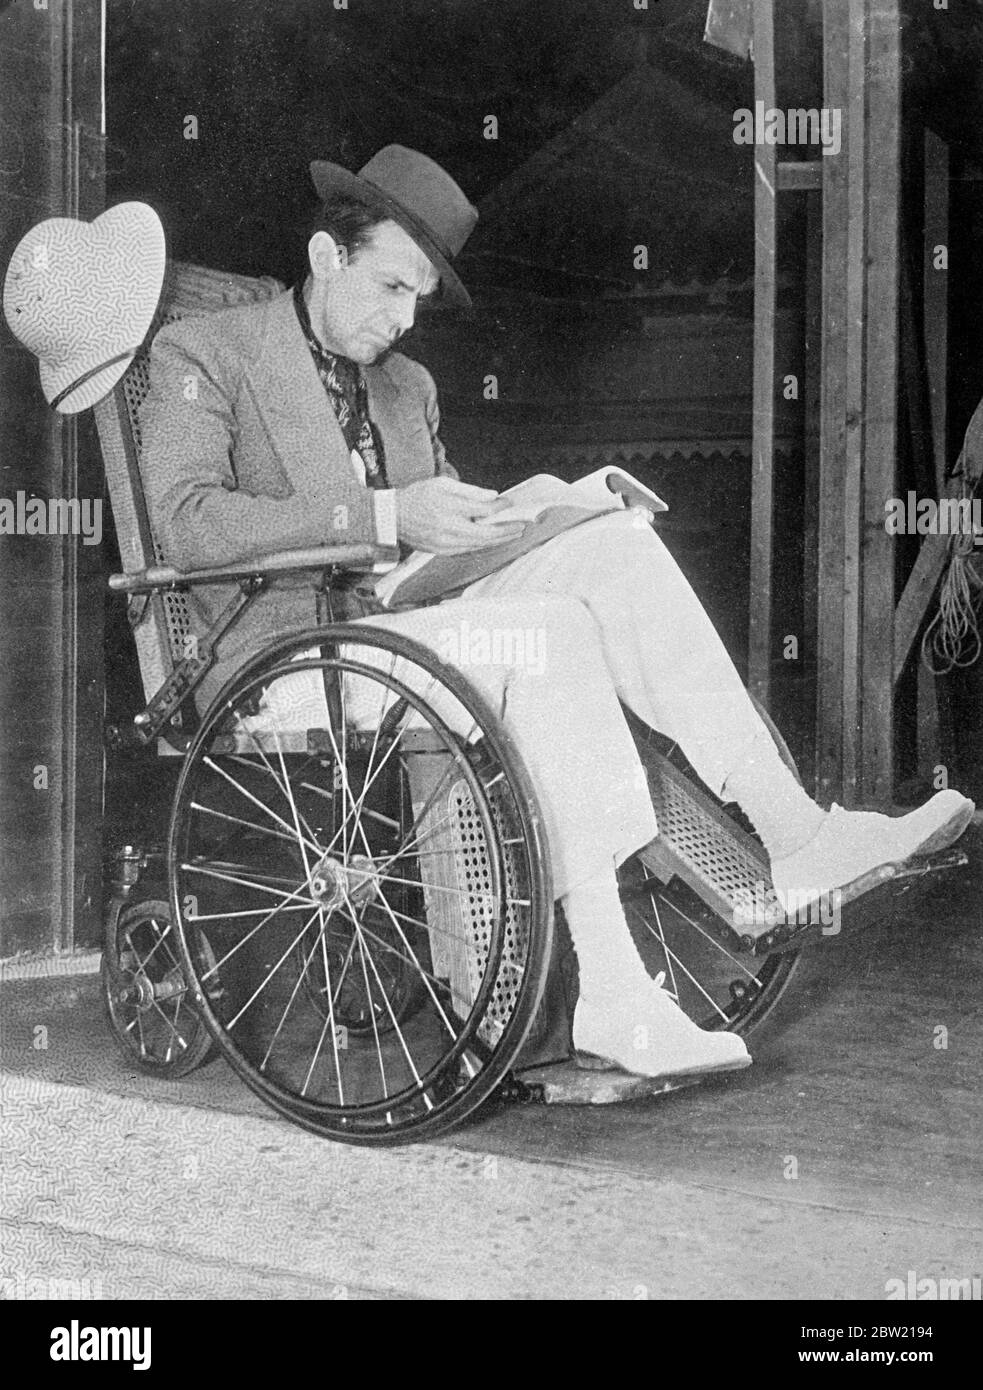 Raymond Massey, l'acteur britannique se remet des effets de la phlébite (caillot de sang dans la jambe) à Hollywood. Afin de perdre le plus peu de temps possible, M. Massey se déplace en fauteuil roulant sur les studios Samuel Goldwyn. 25 août 1937 Banque D'Images